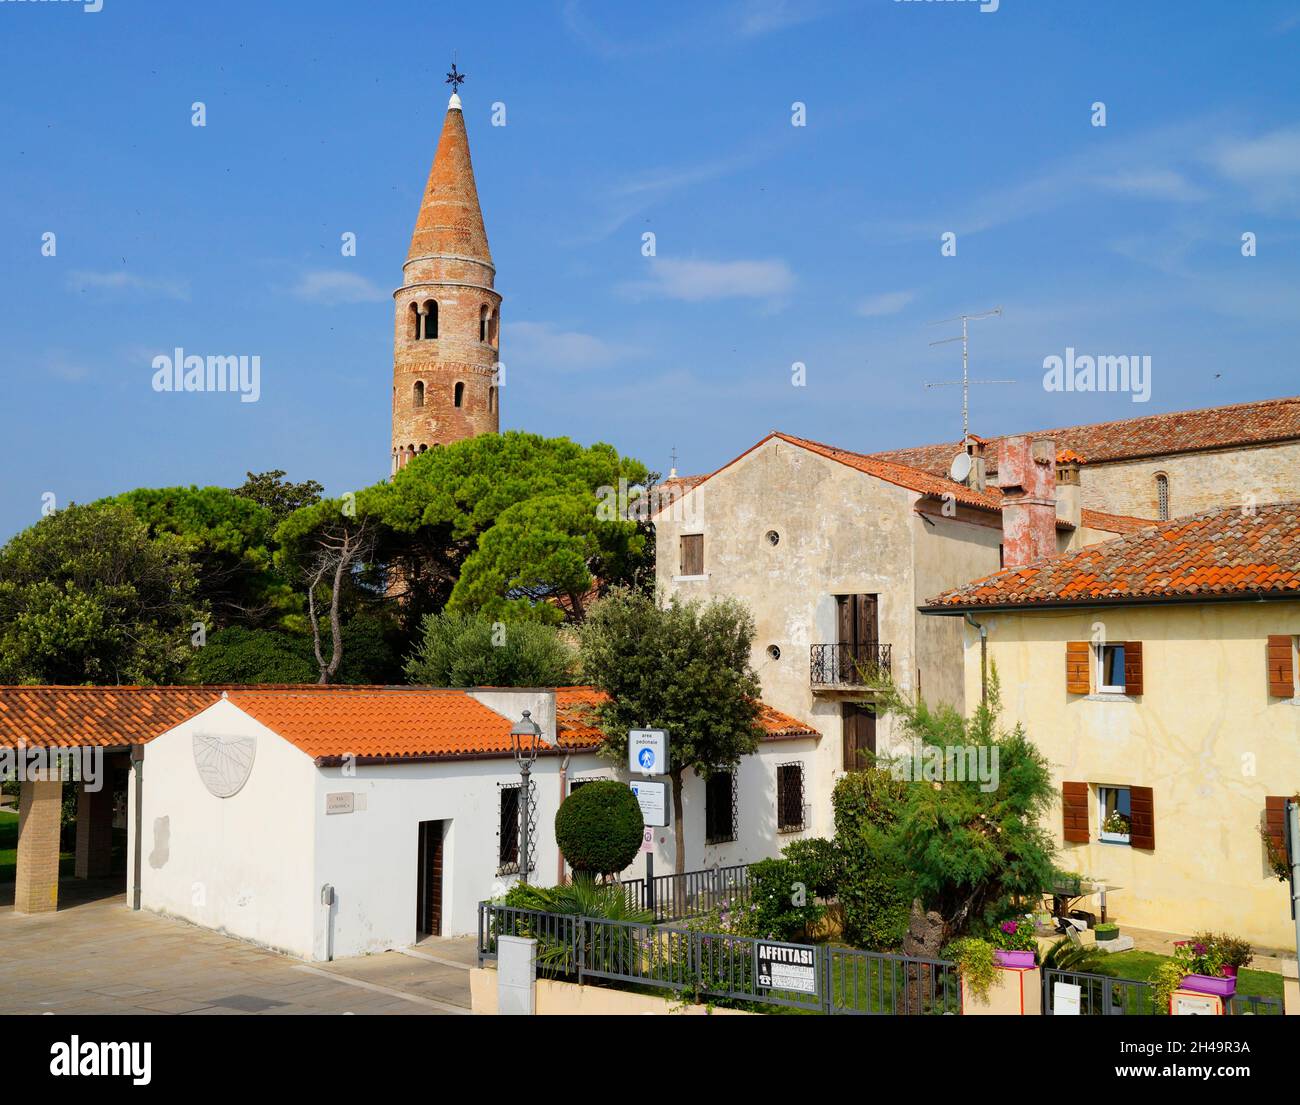 Schöne malerische Caorle Stadt mit Duomo Santo Stefano Turm (St. Stephen) in Italien (Adria) Stockfoto